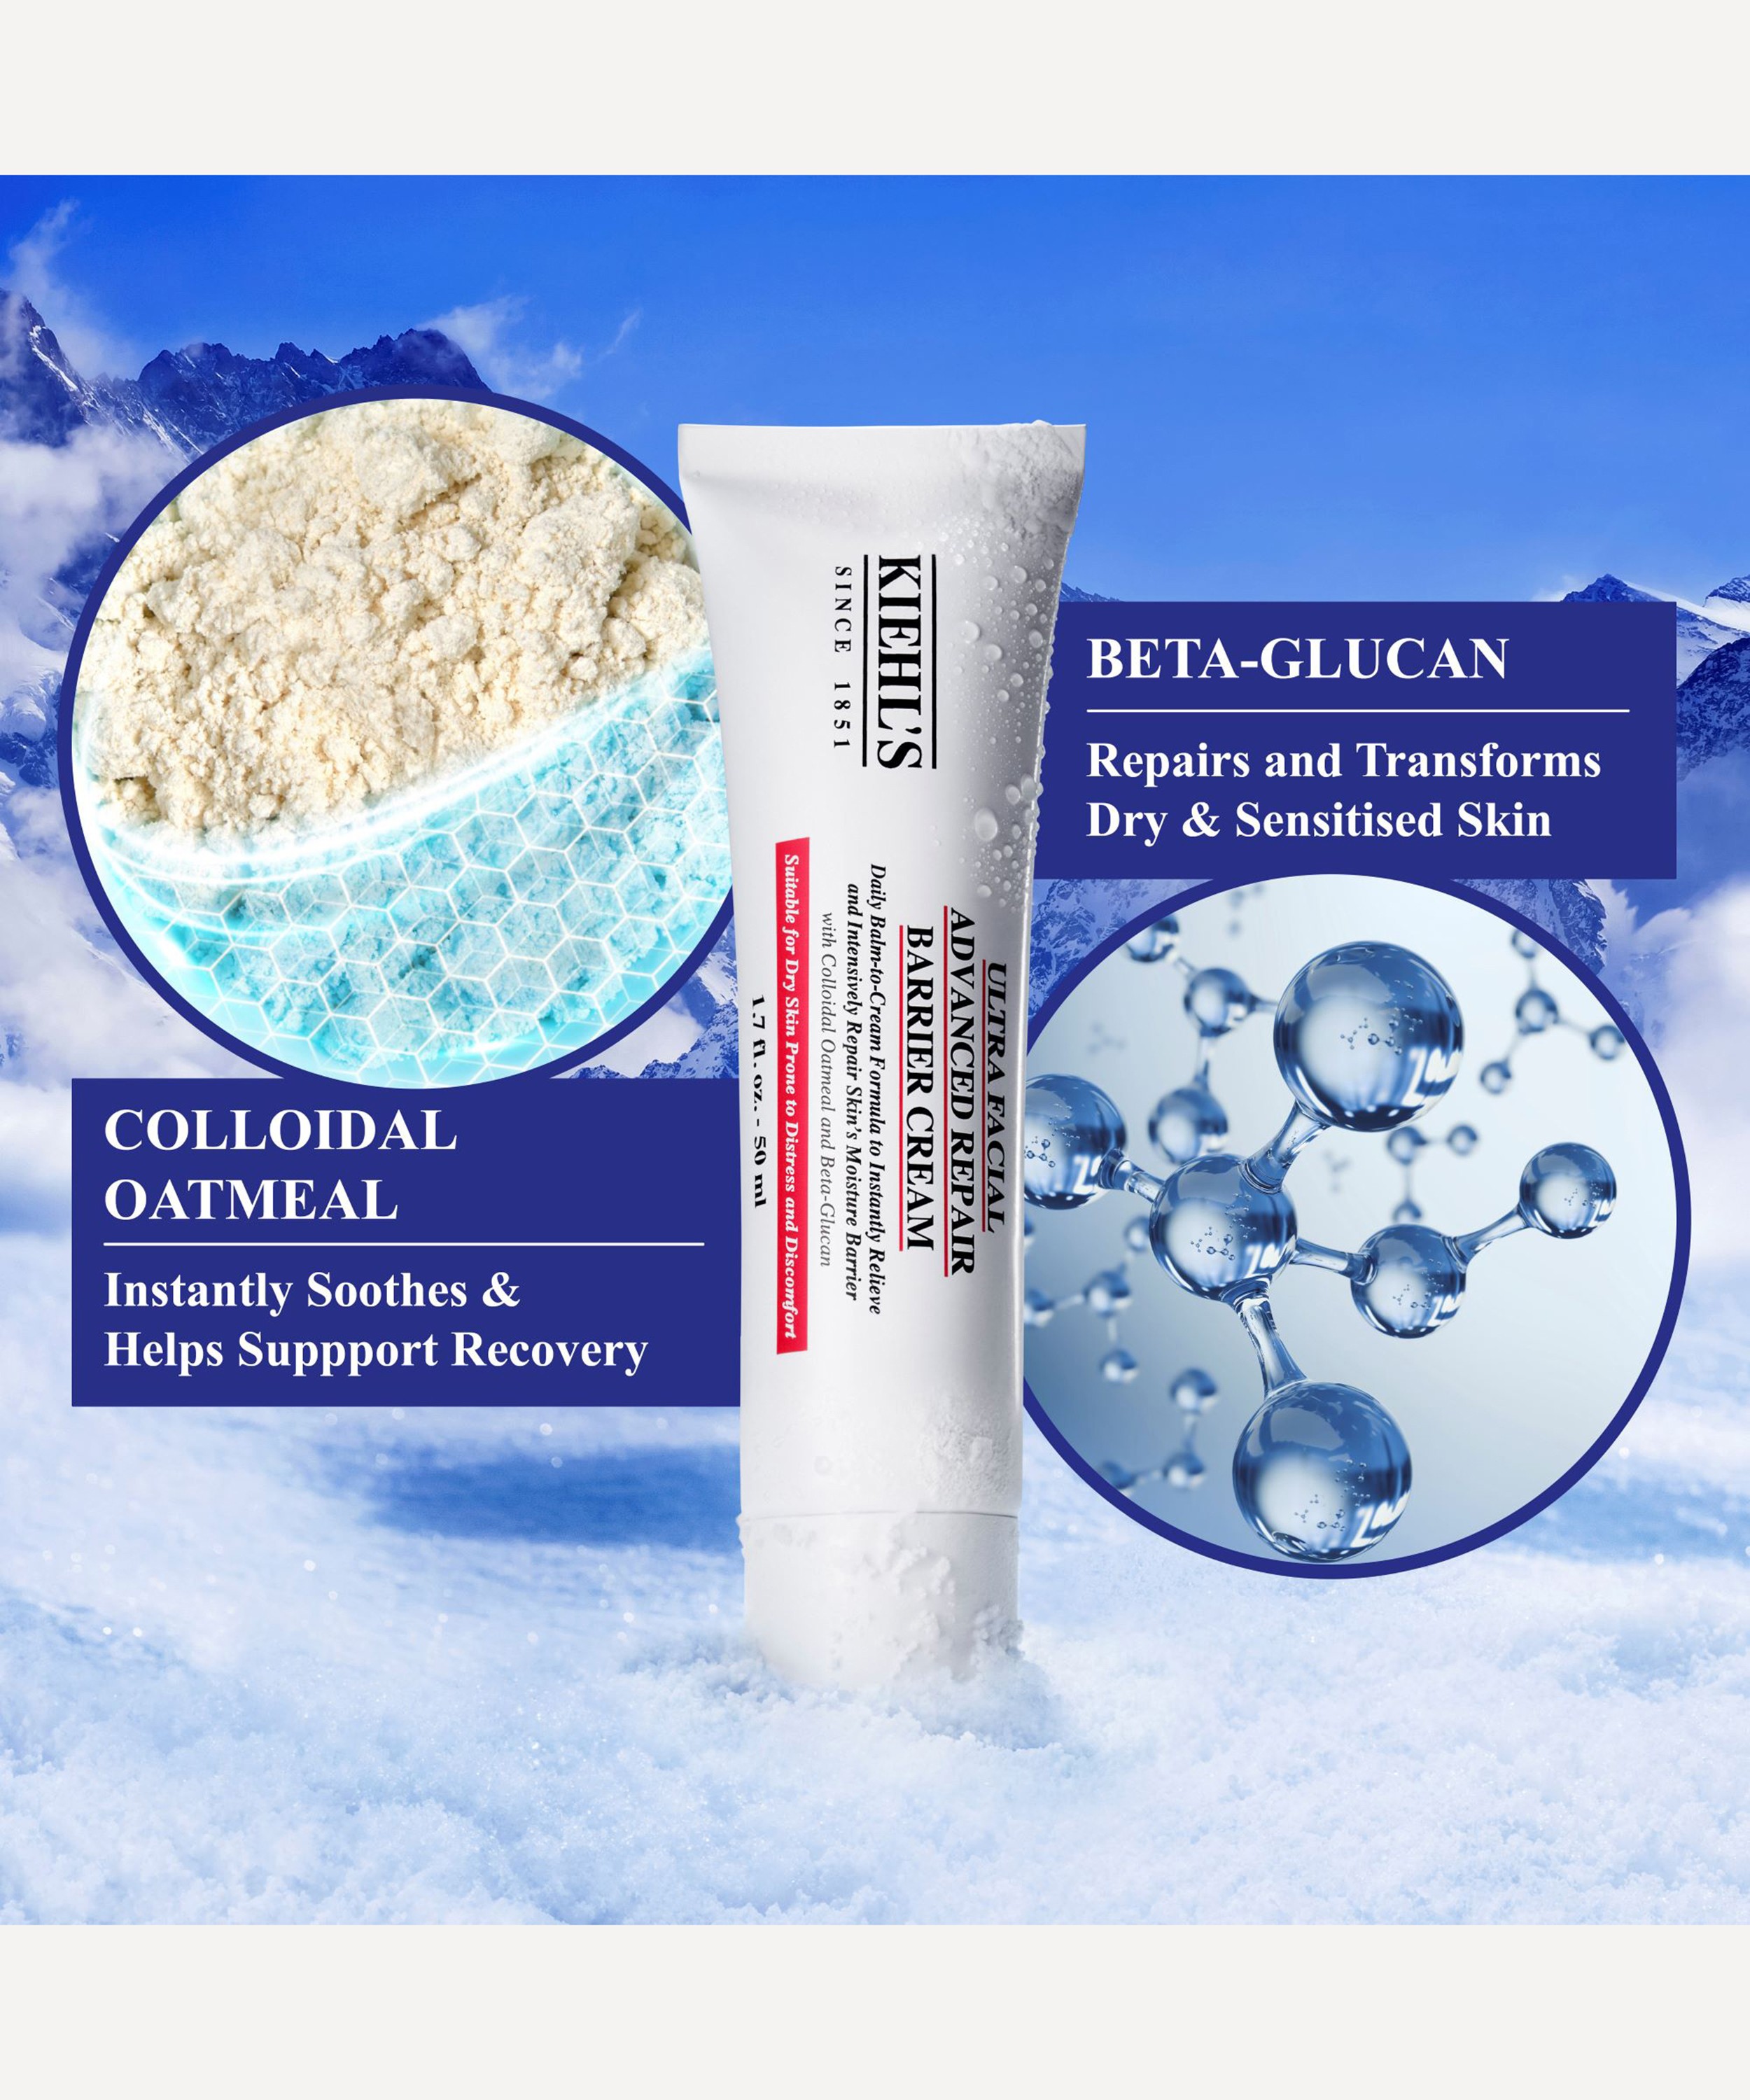 Ultra Facial Advanced Repair Barrier Cream – Kiehl's